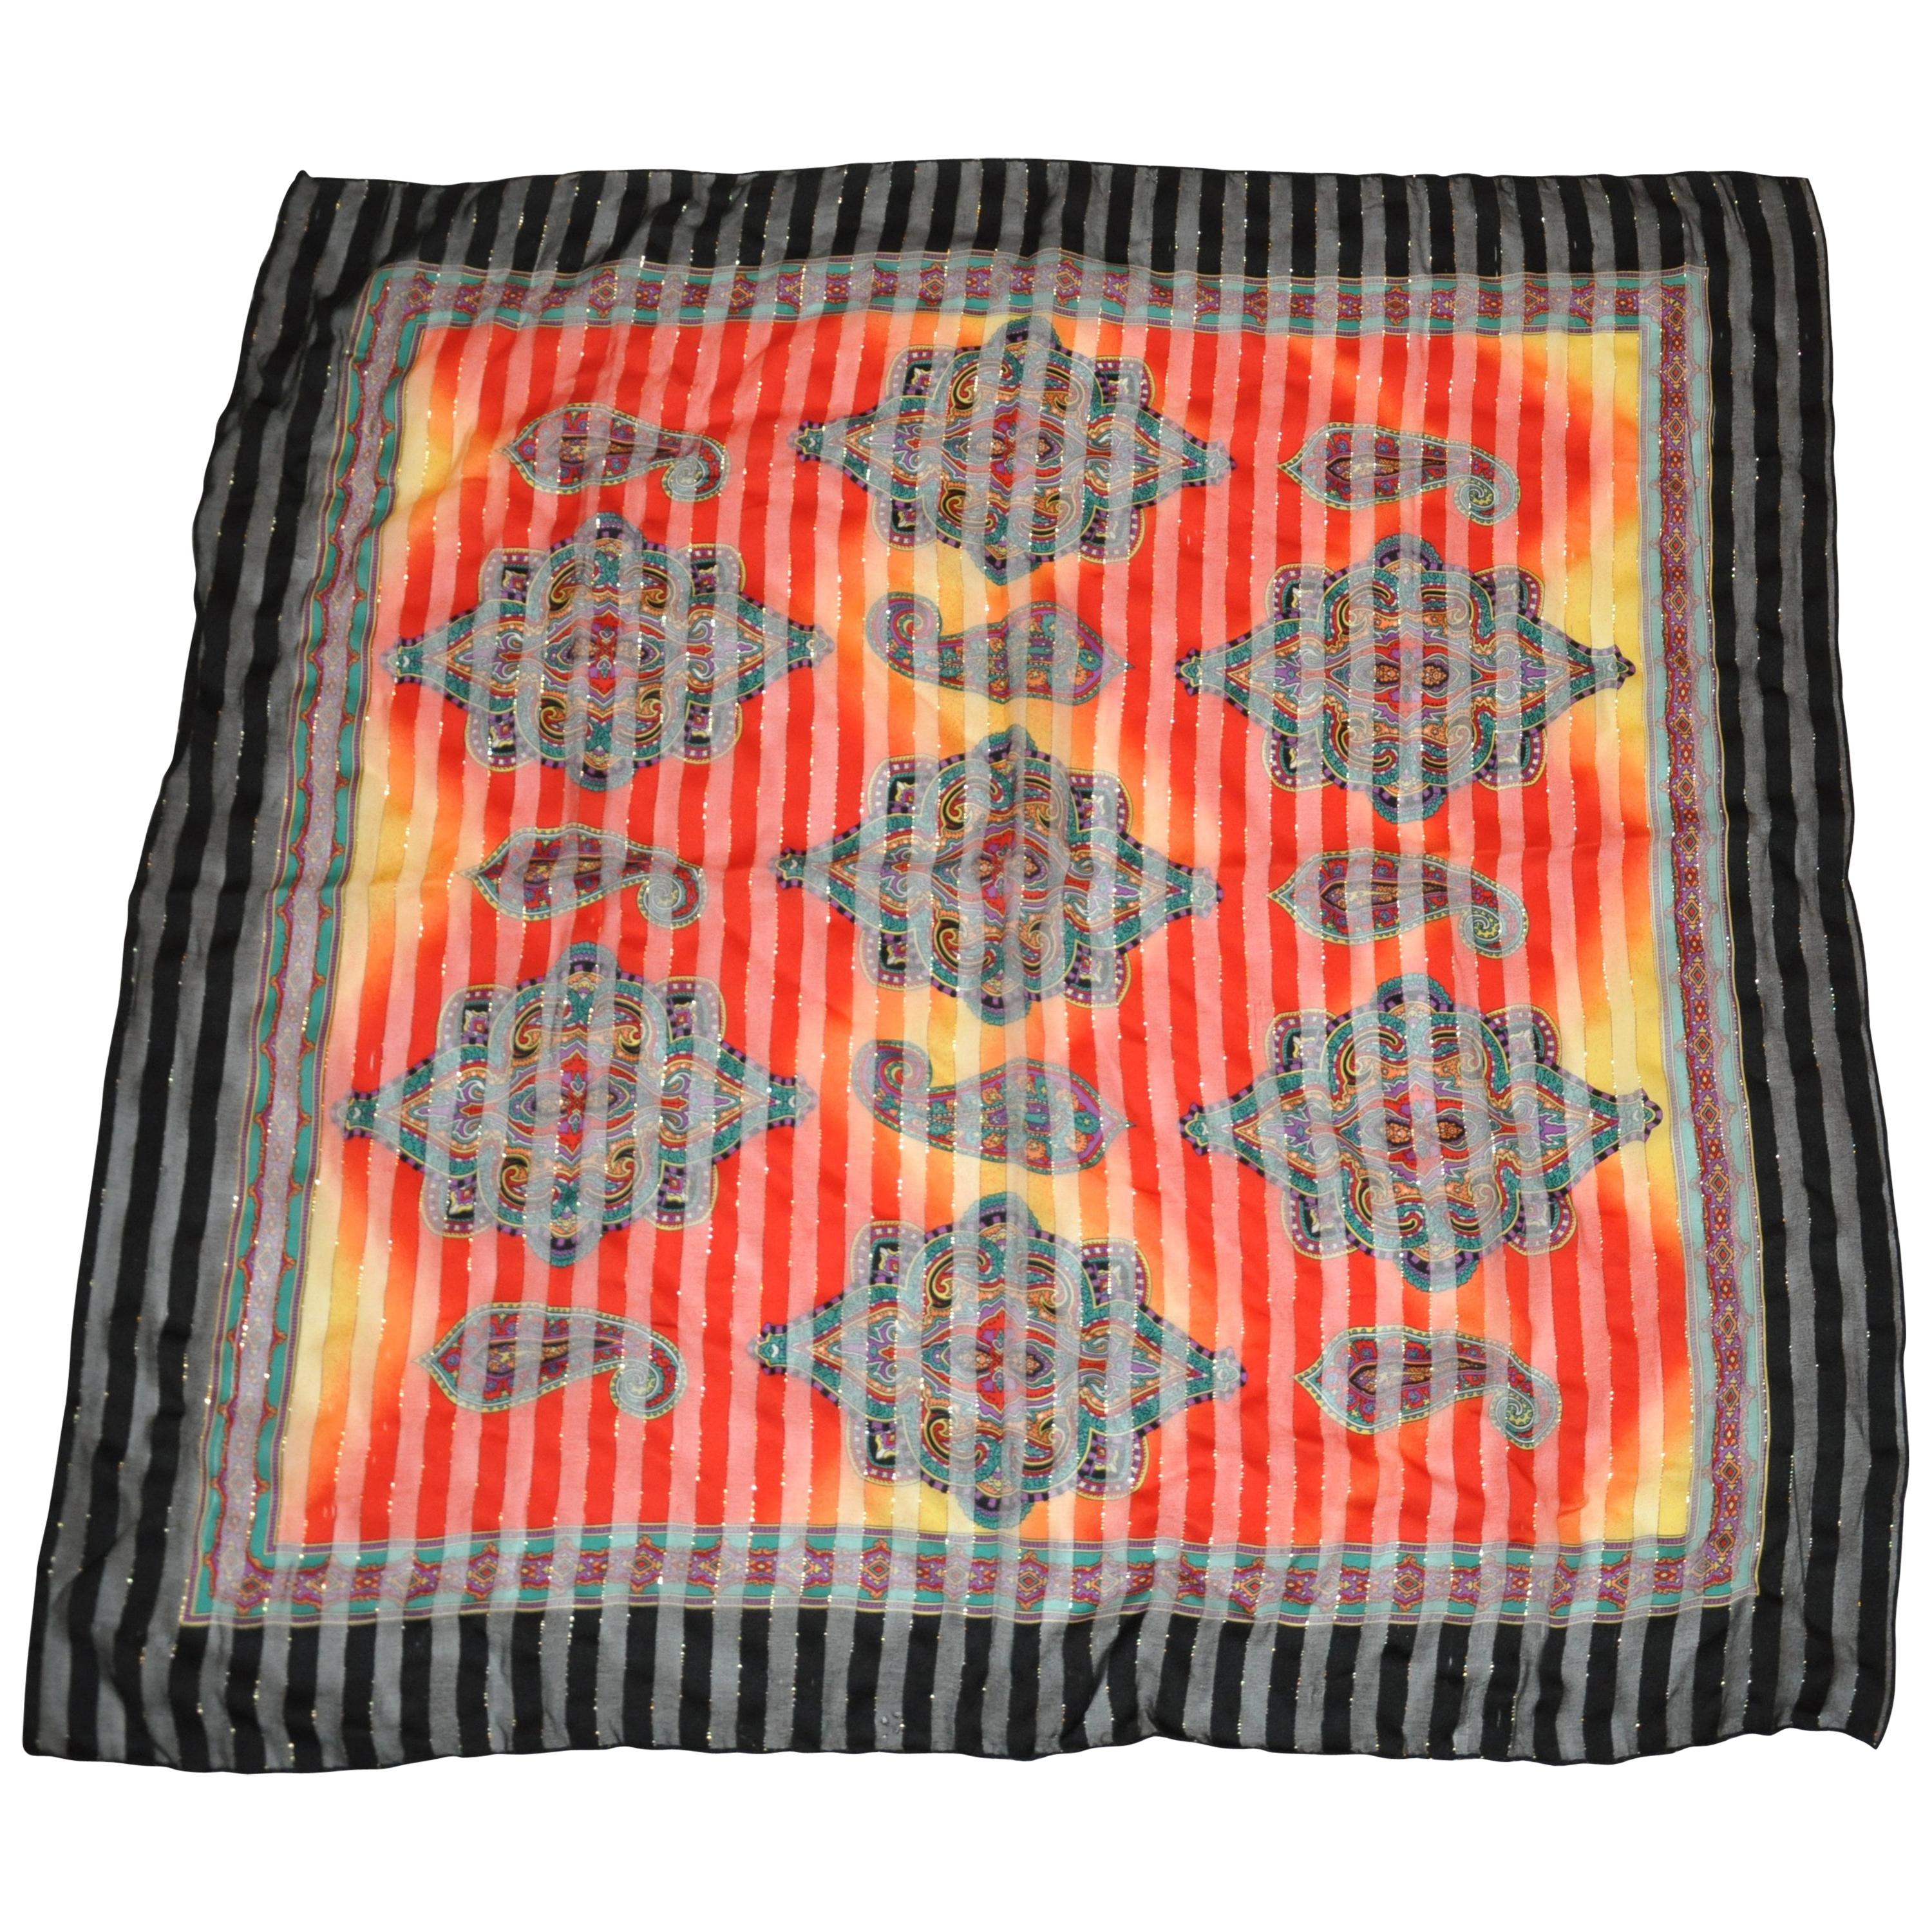 Écharpe multicolore « SunBurst With Palseys » en mousseline de soie avec bordures noires